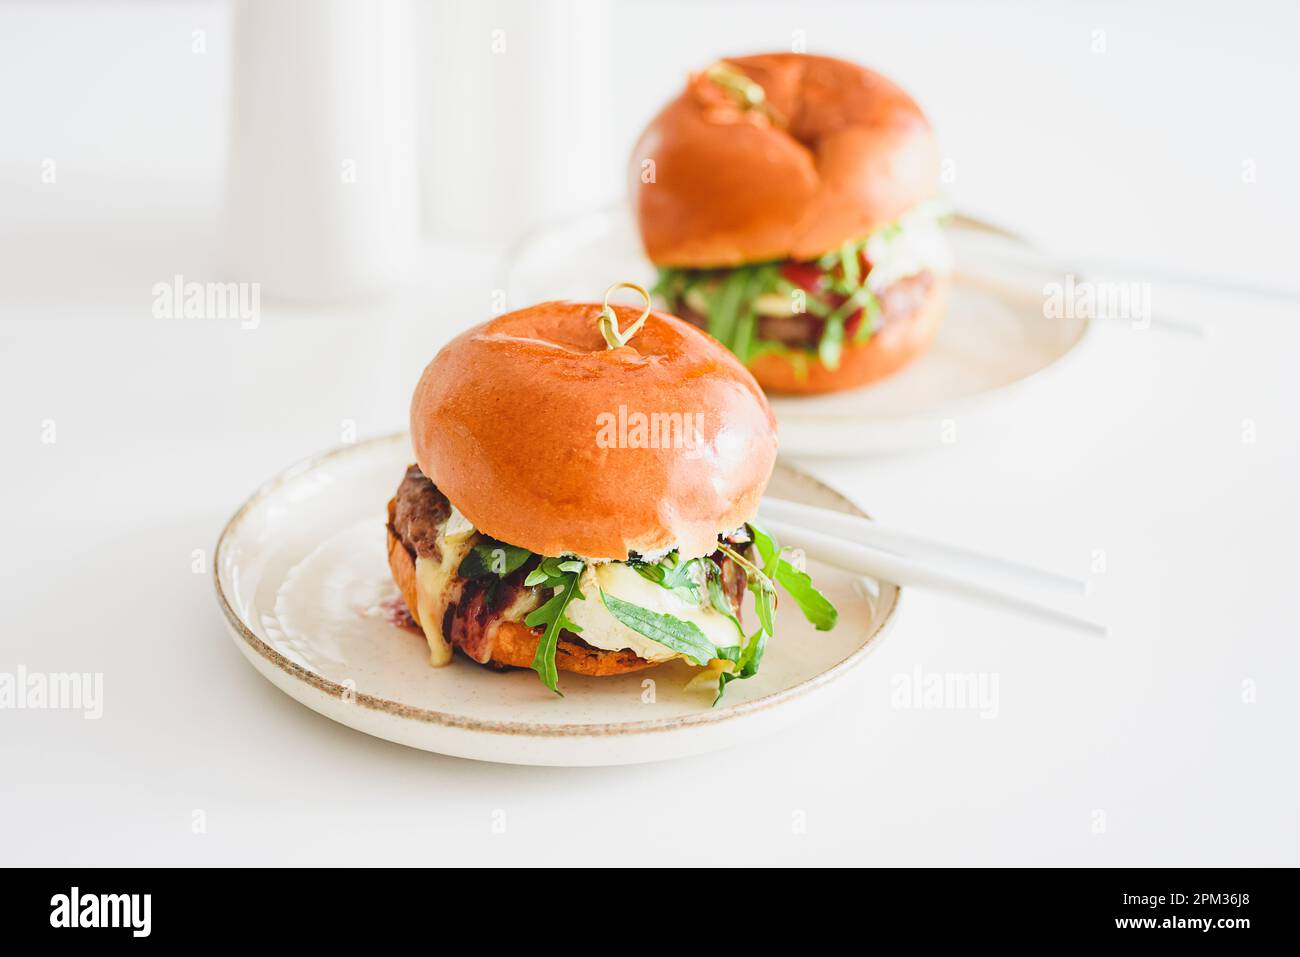 Deux délicieux hamburgers faits maison avec du bœuf, du fromage et des légumes sur une table en bois blanc Banque D'Images